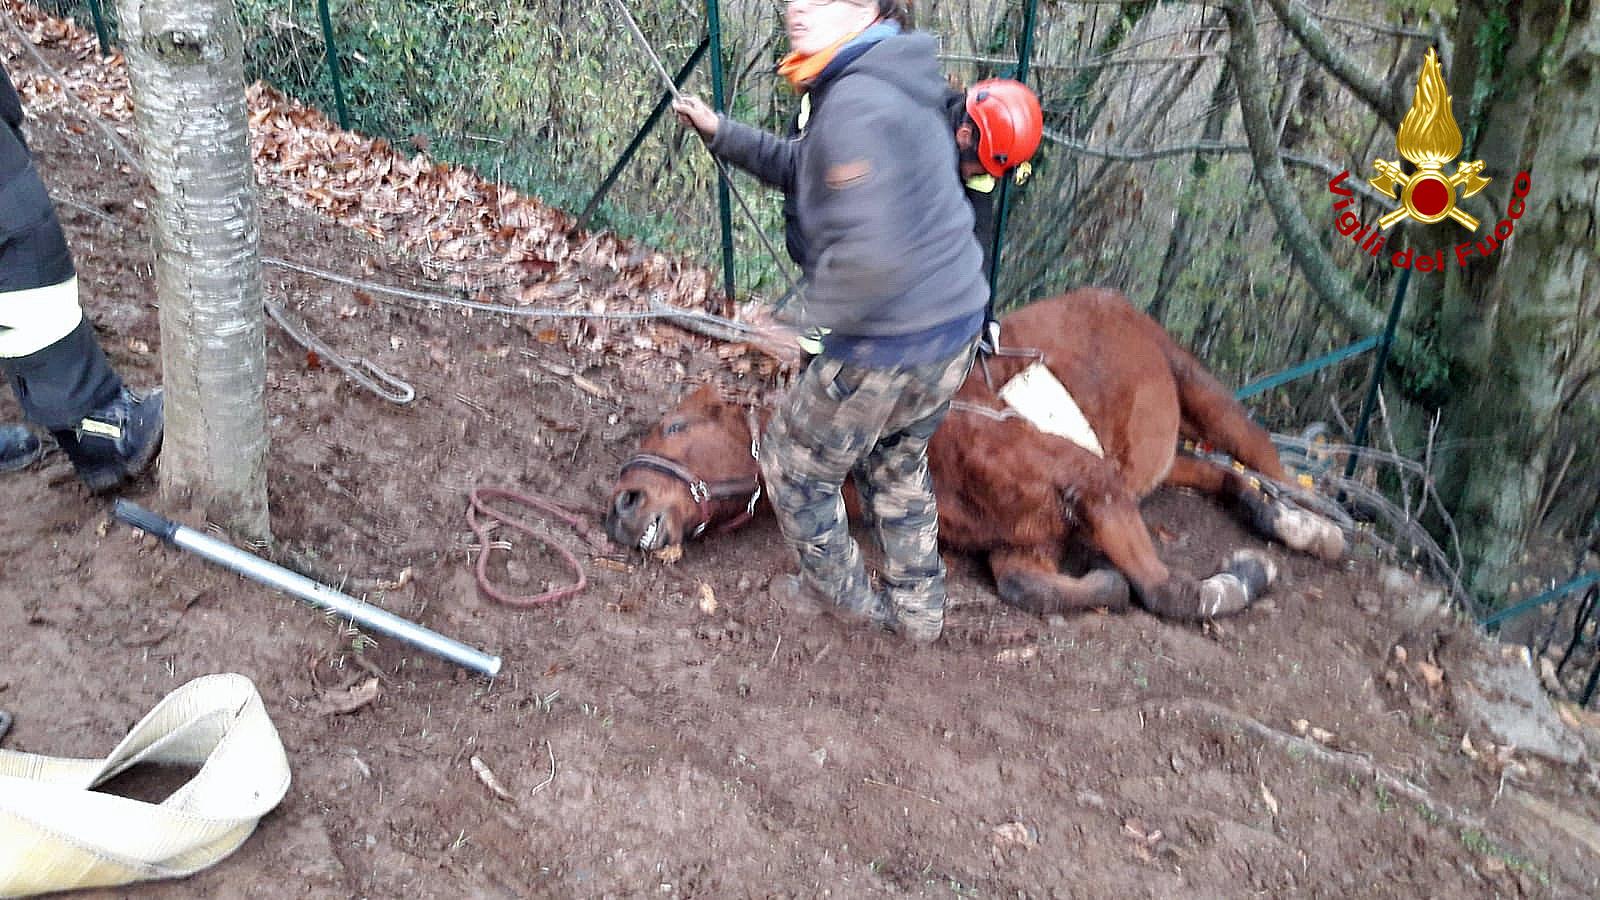 Cavallo precipita in un dirupo e si ferisce, salvato dai vigili del fuoco